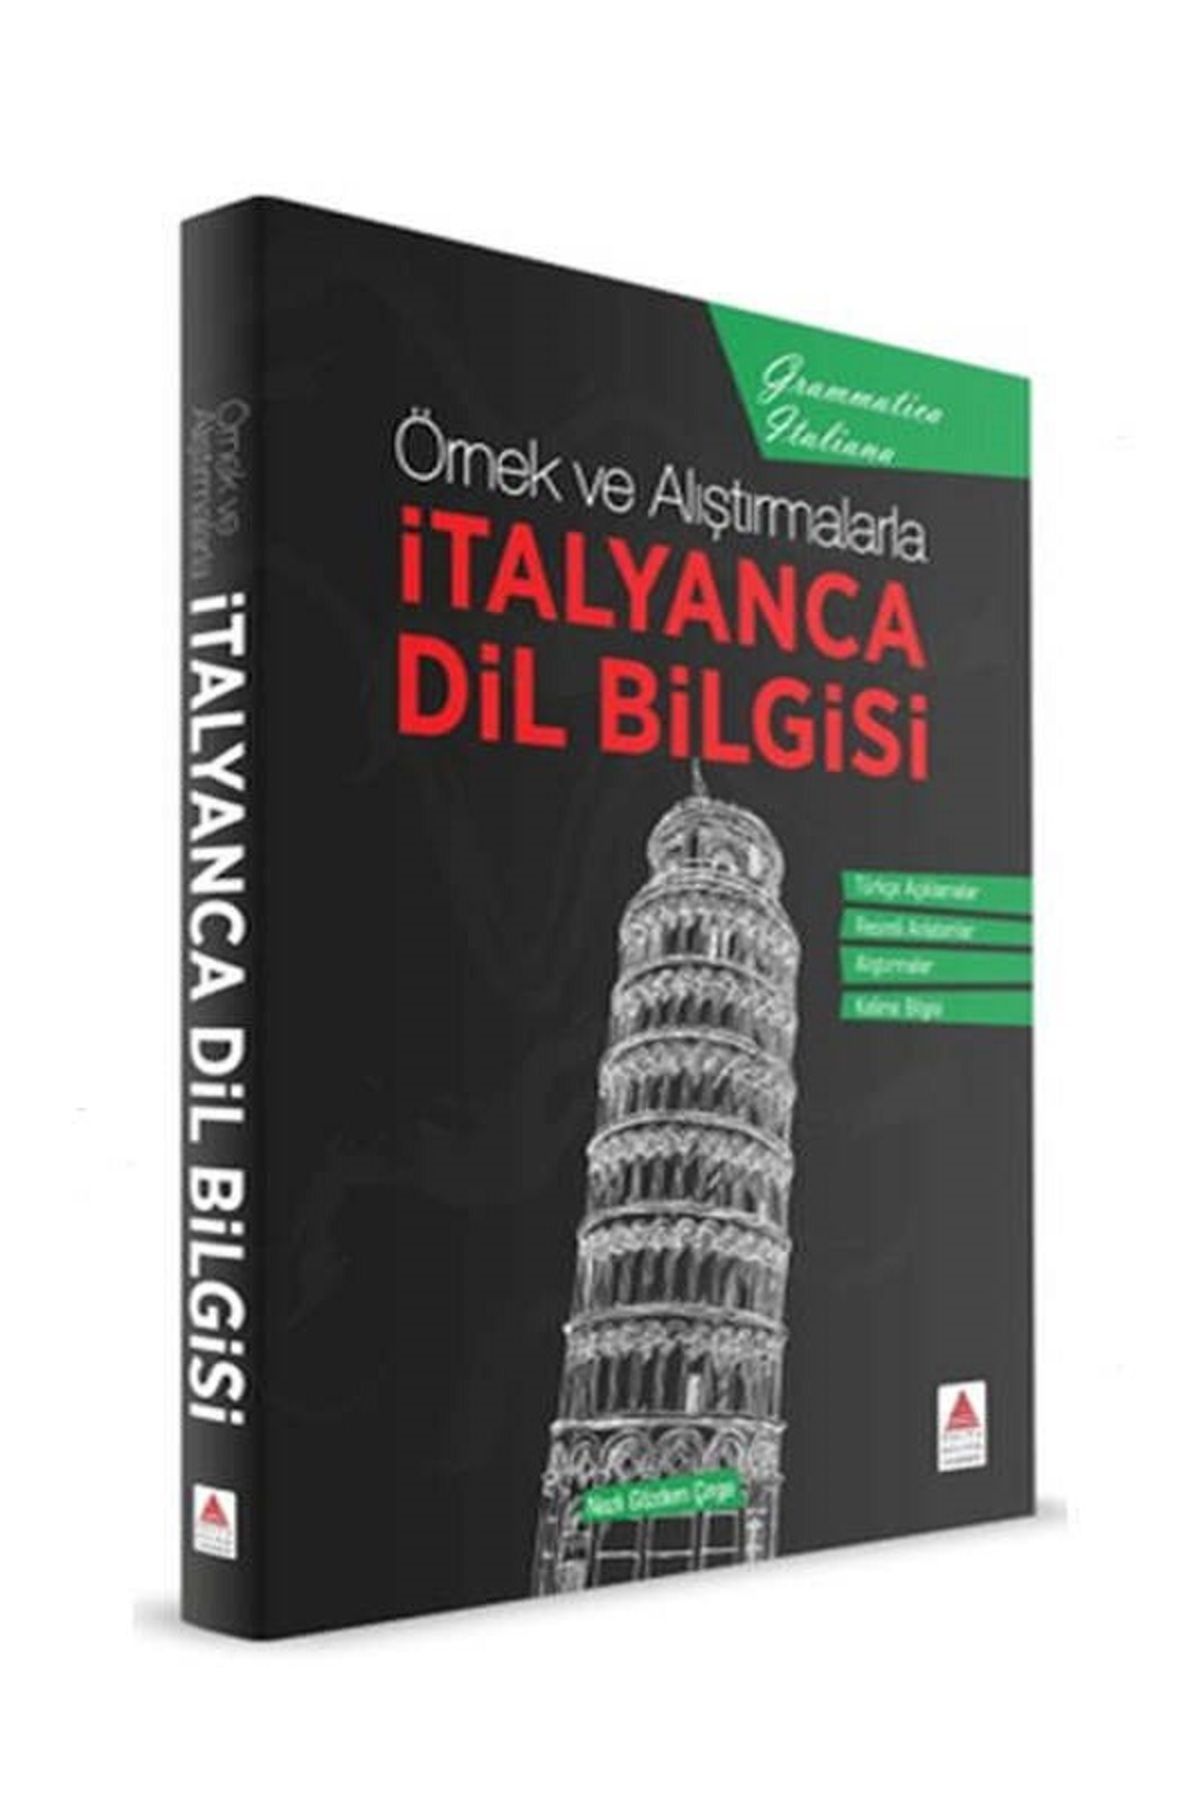 Delta Kültür Yayınları Örnek ve Alıştırmalarla İtalyanca Dil Bilgisi